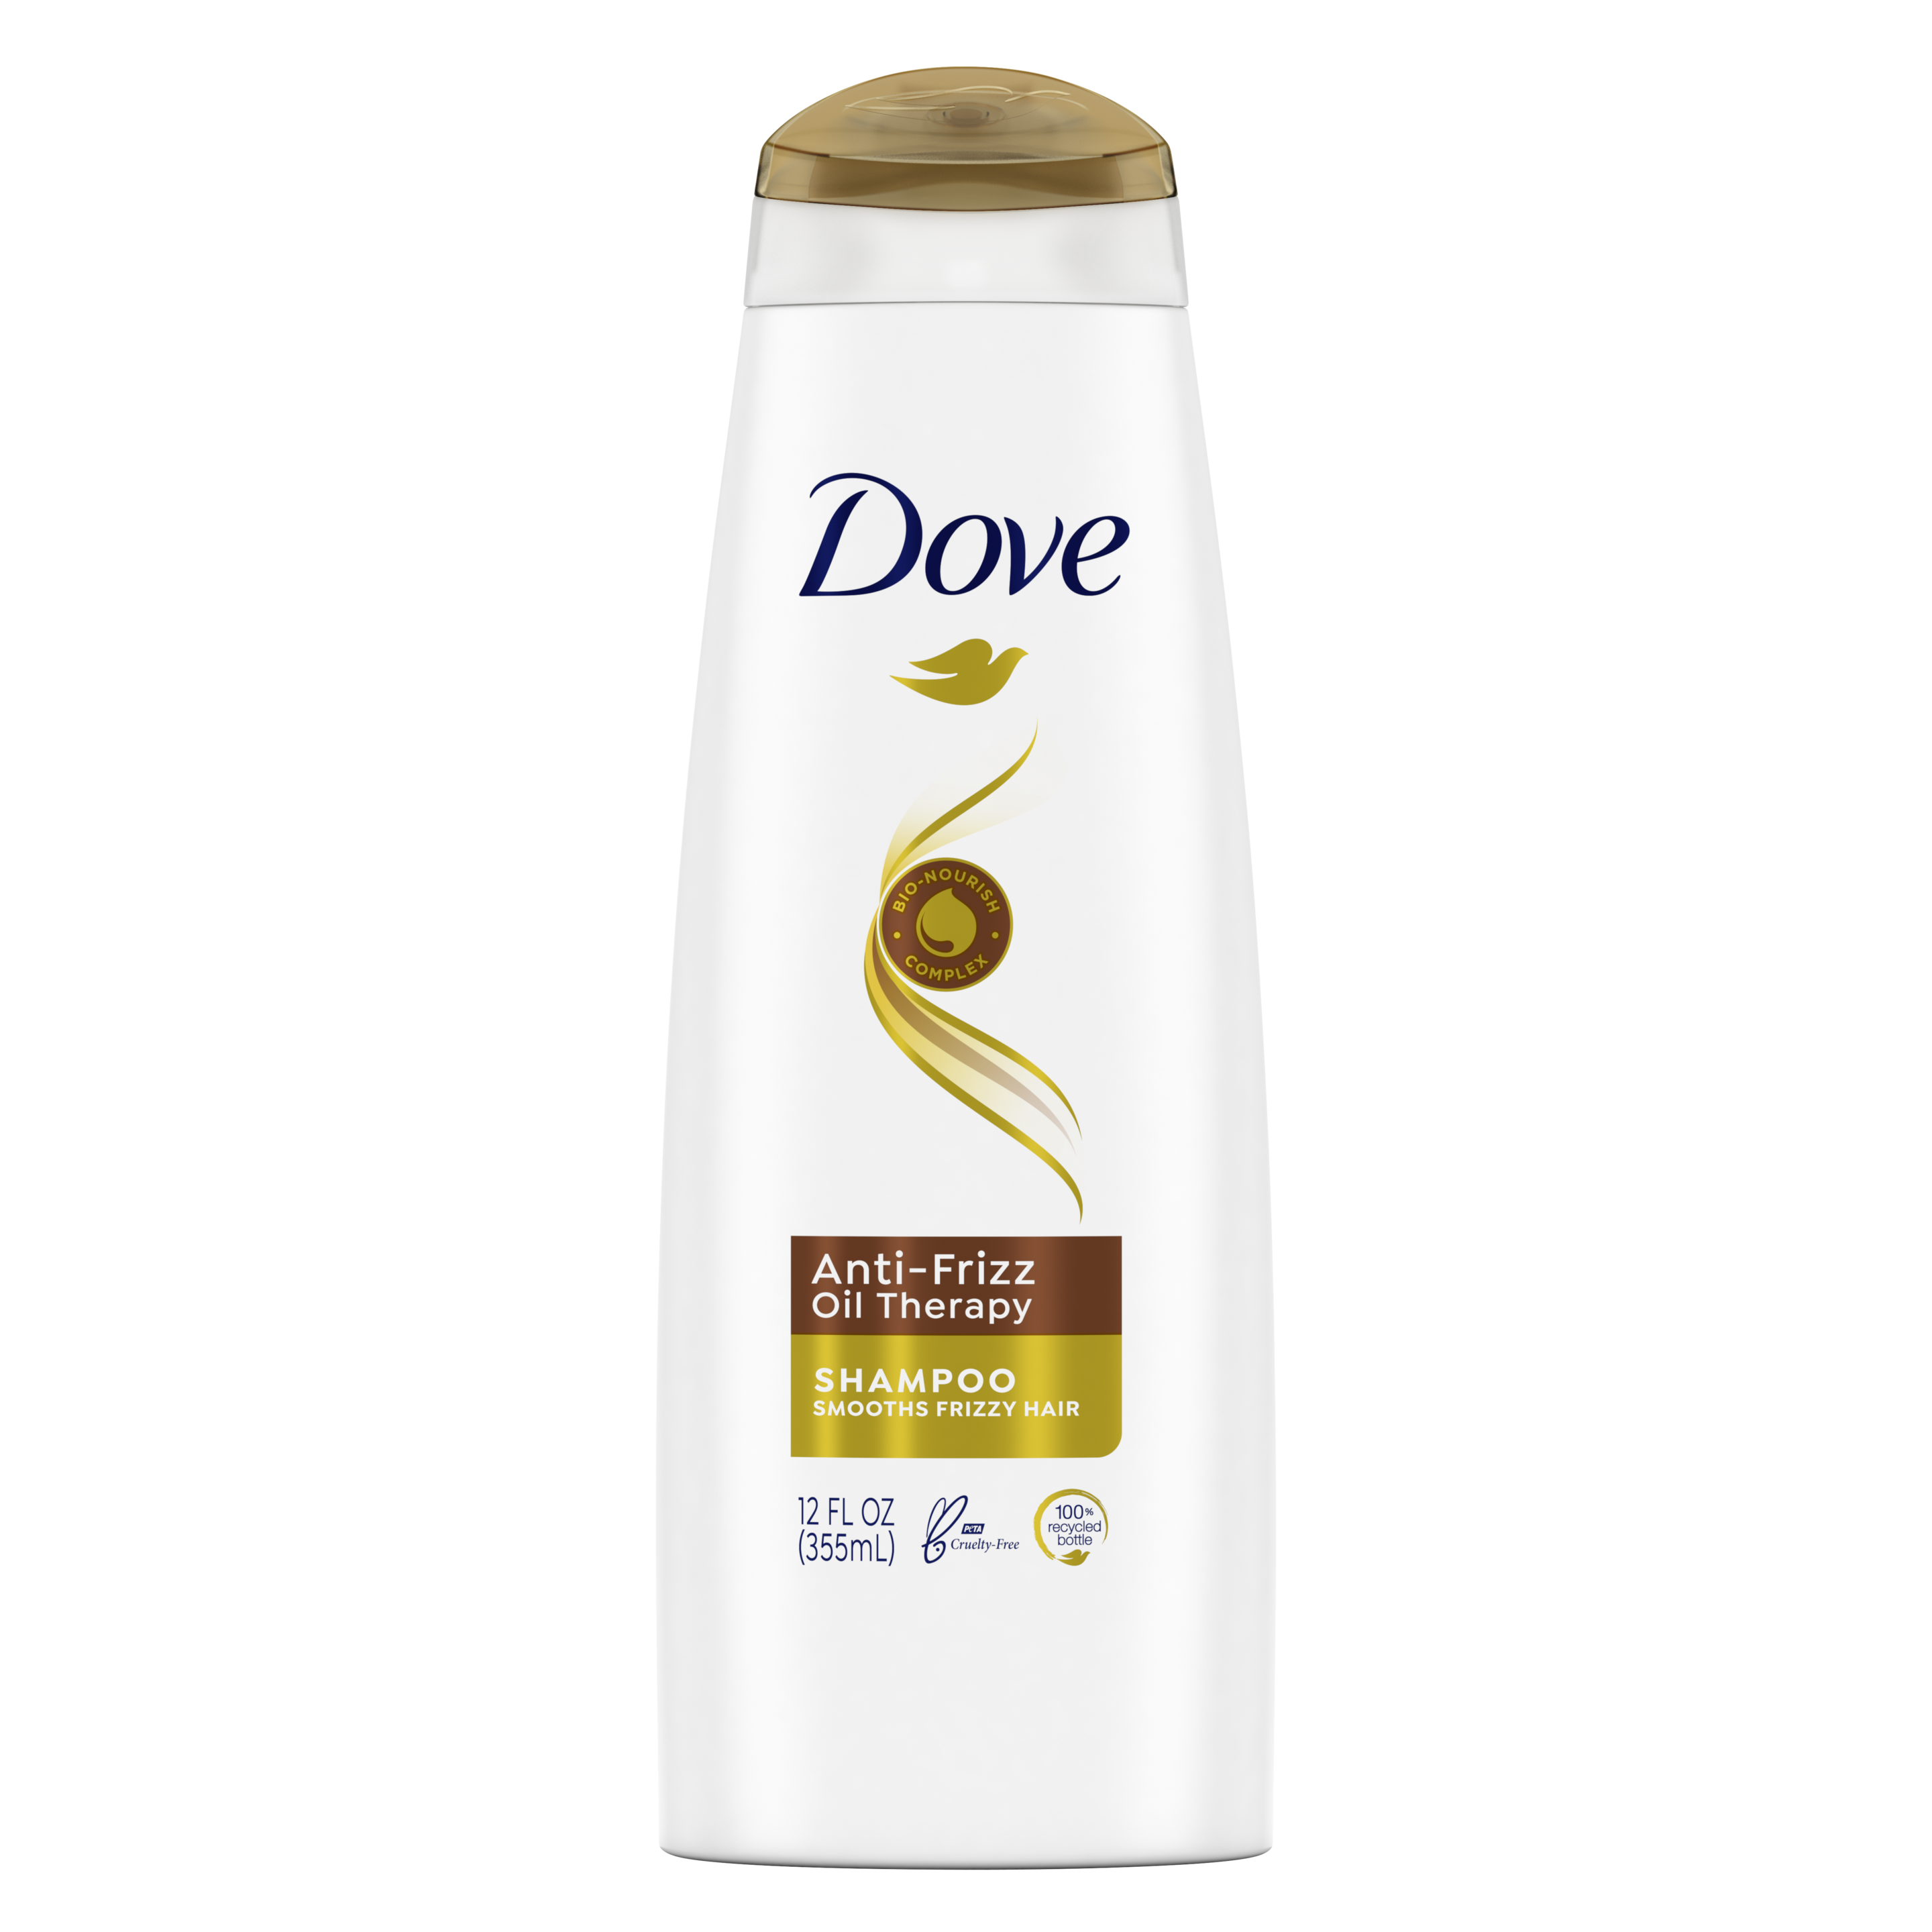 Dove Anti-Frizz Oil Therapy Shampoo 12 oz